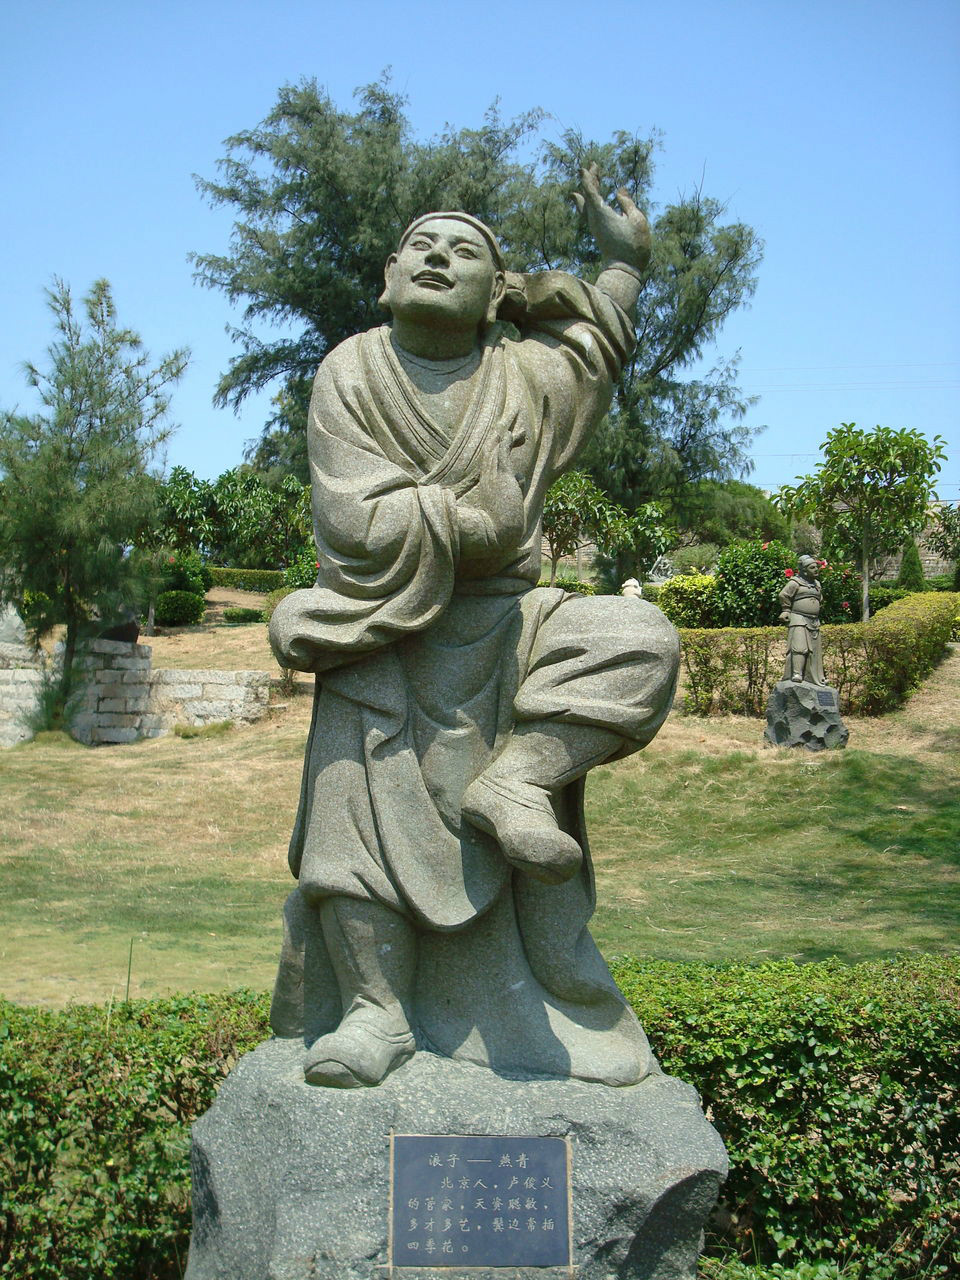 崇武石雕工藝博覽園中的燕青雕塑